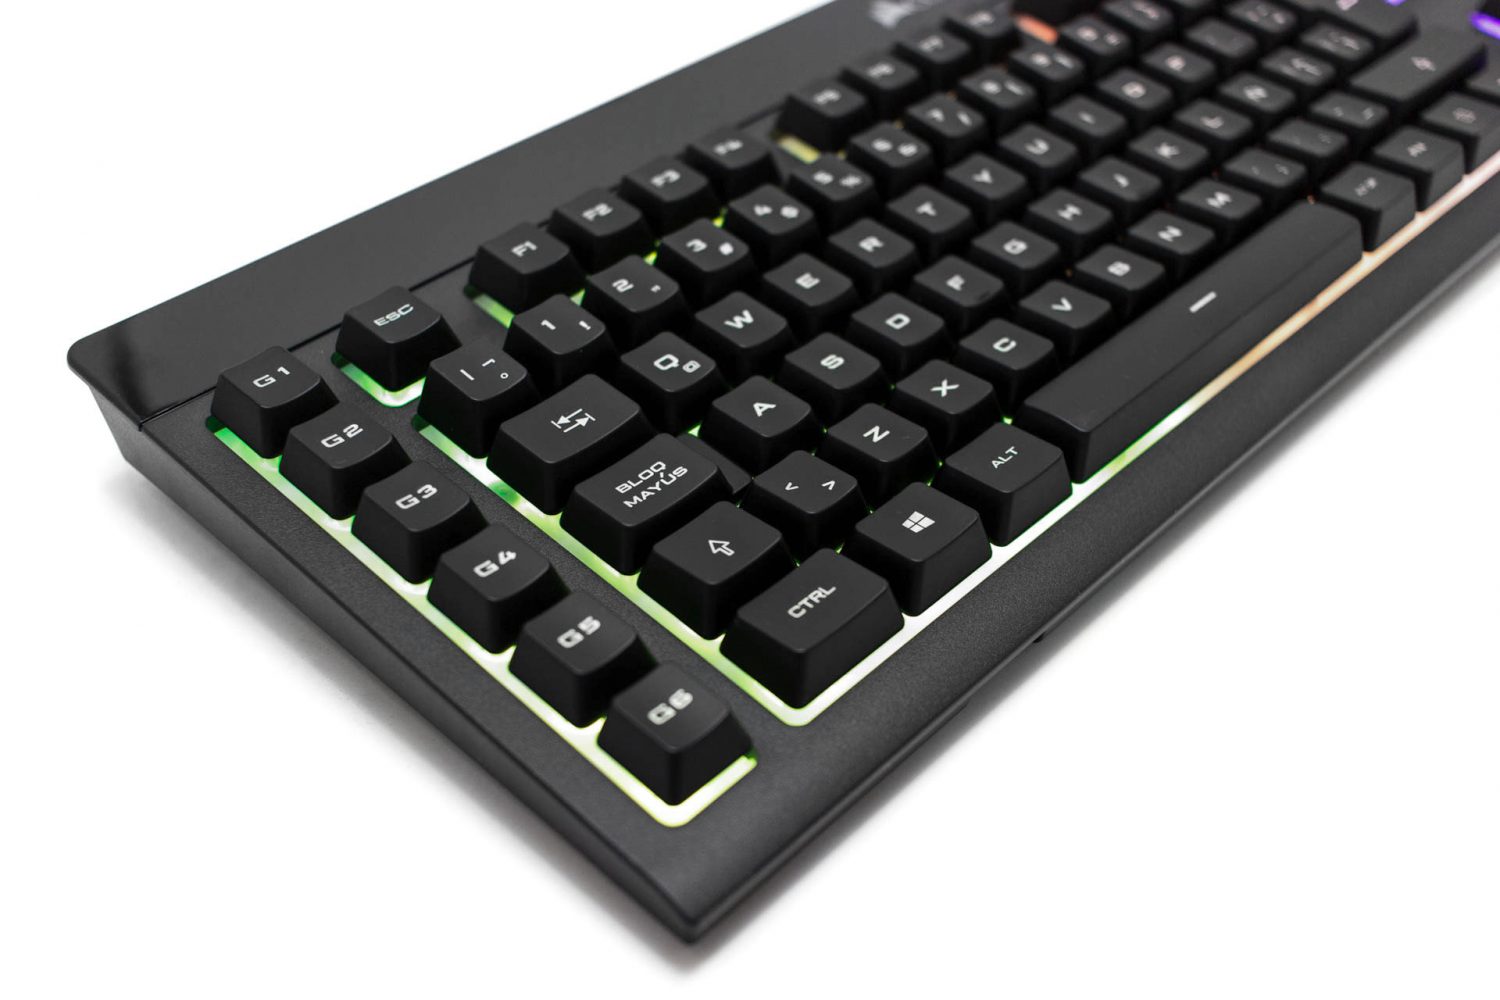 Review: ¿El MEJOR teclado mecánico gama alta CALIDAD-PRECIO RGB?, 2017